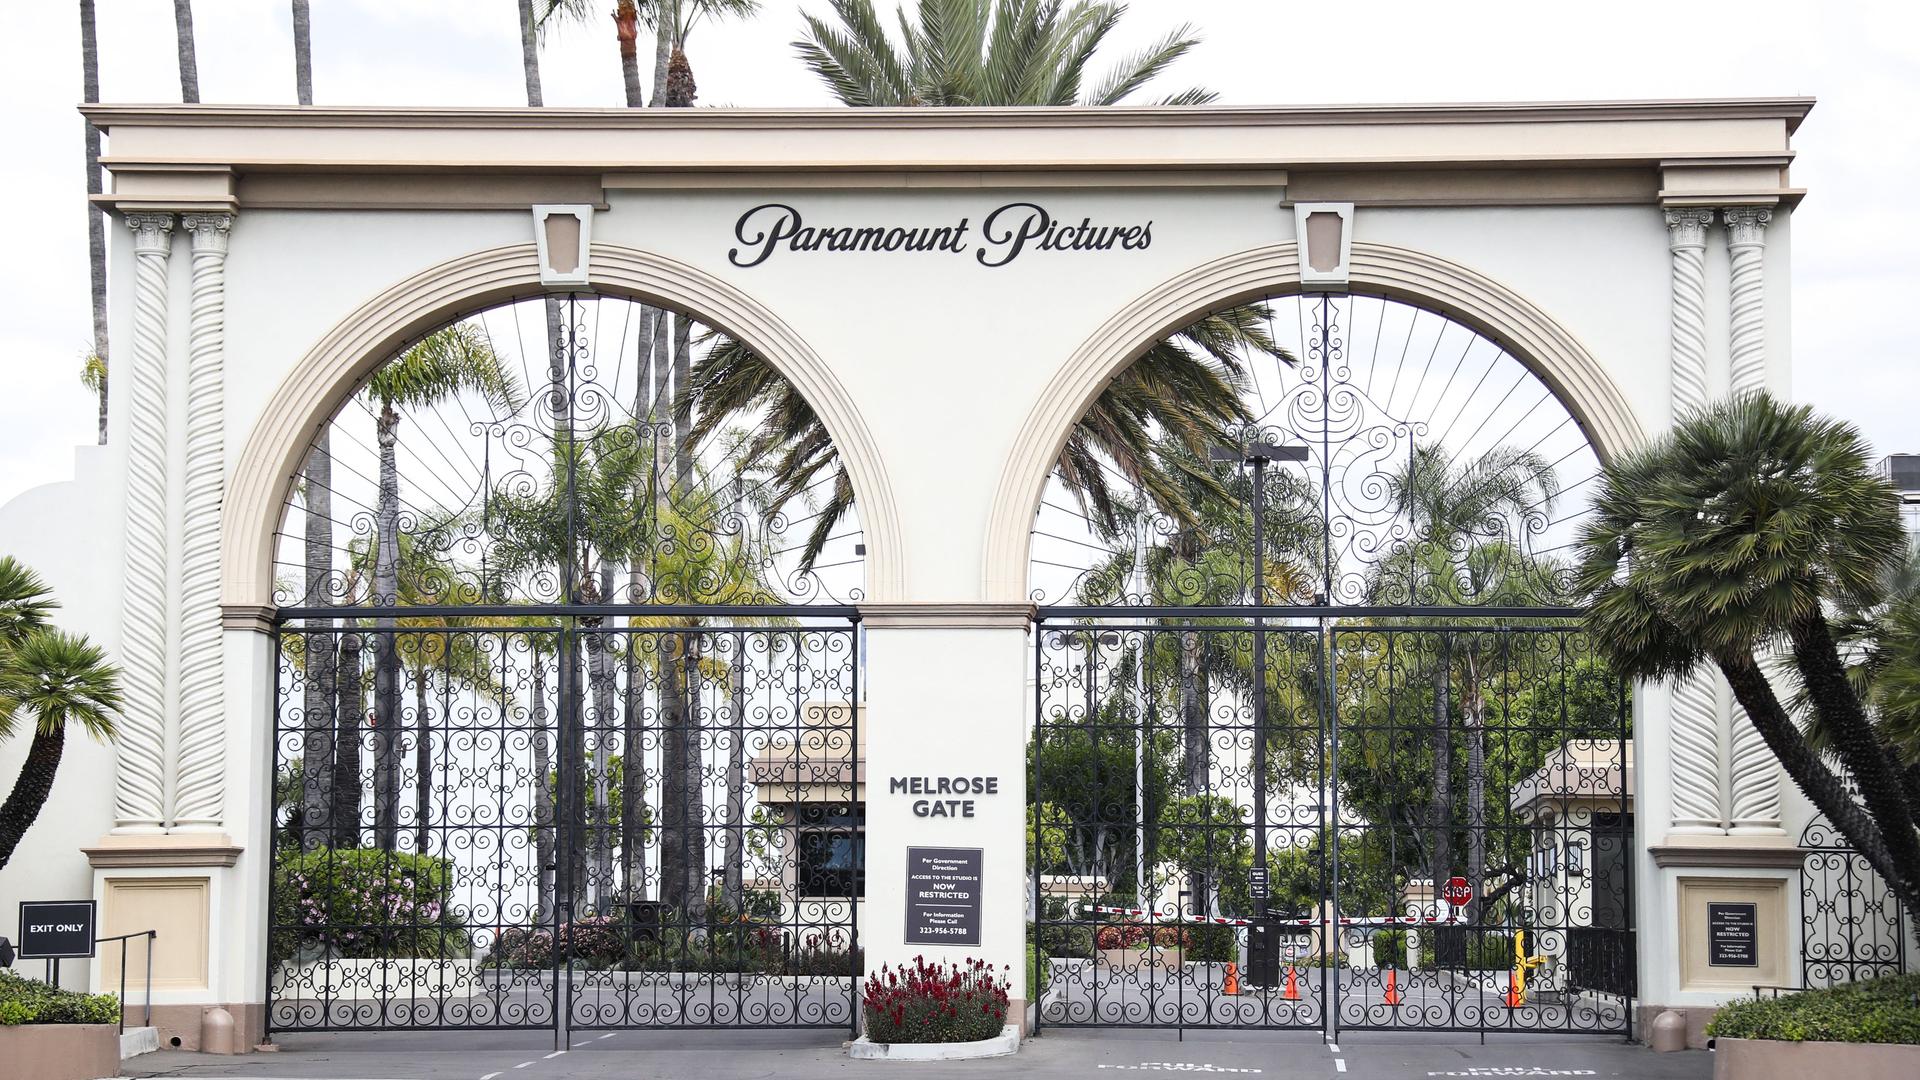 Der Eingangsbereich zu den Paramount Pictures Studios auf der Melrose Avenue in Los Angeles. 